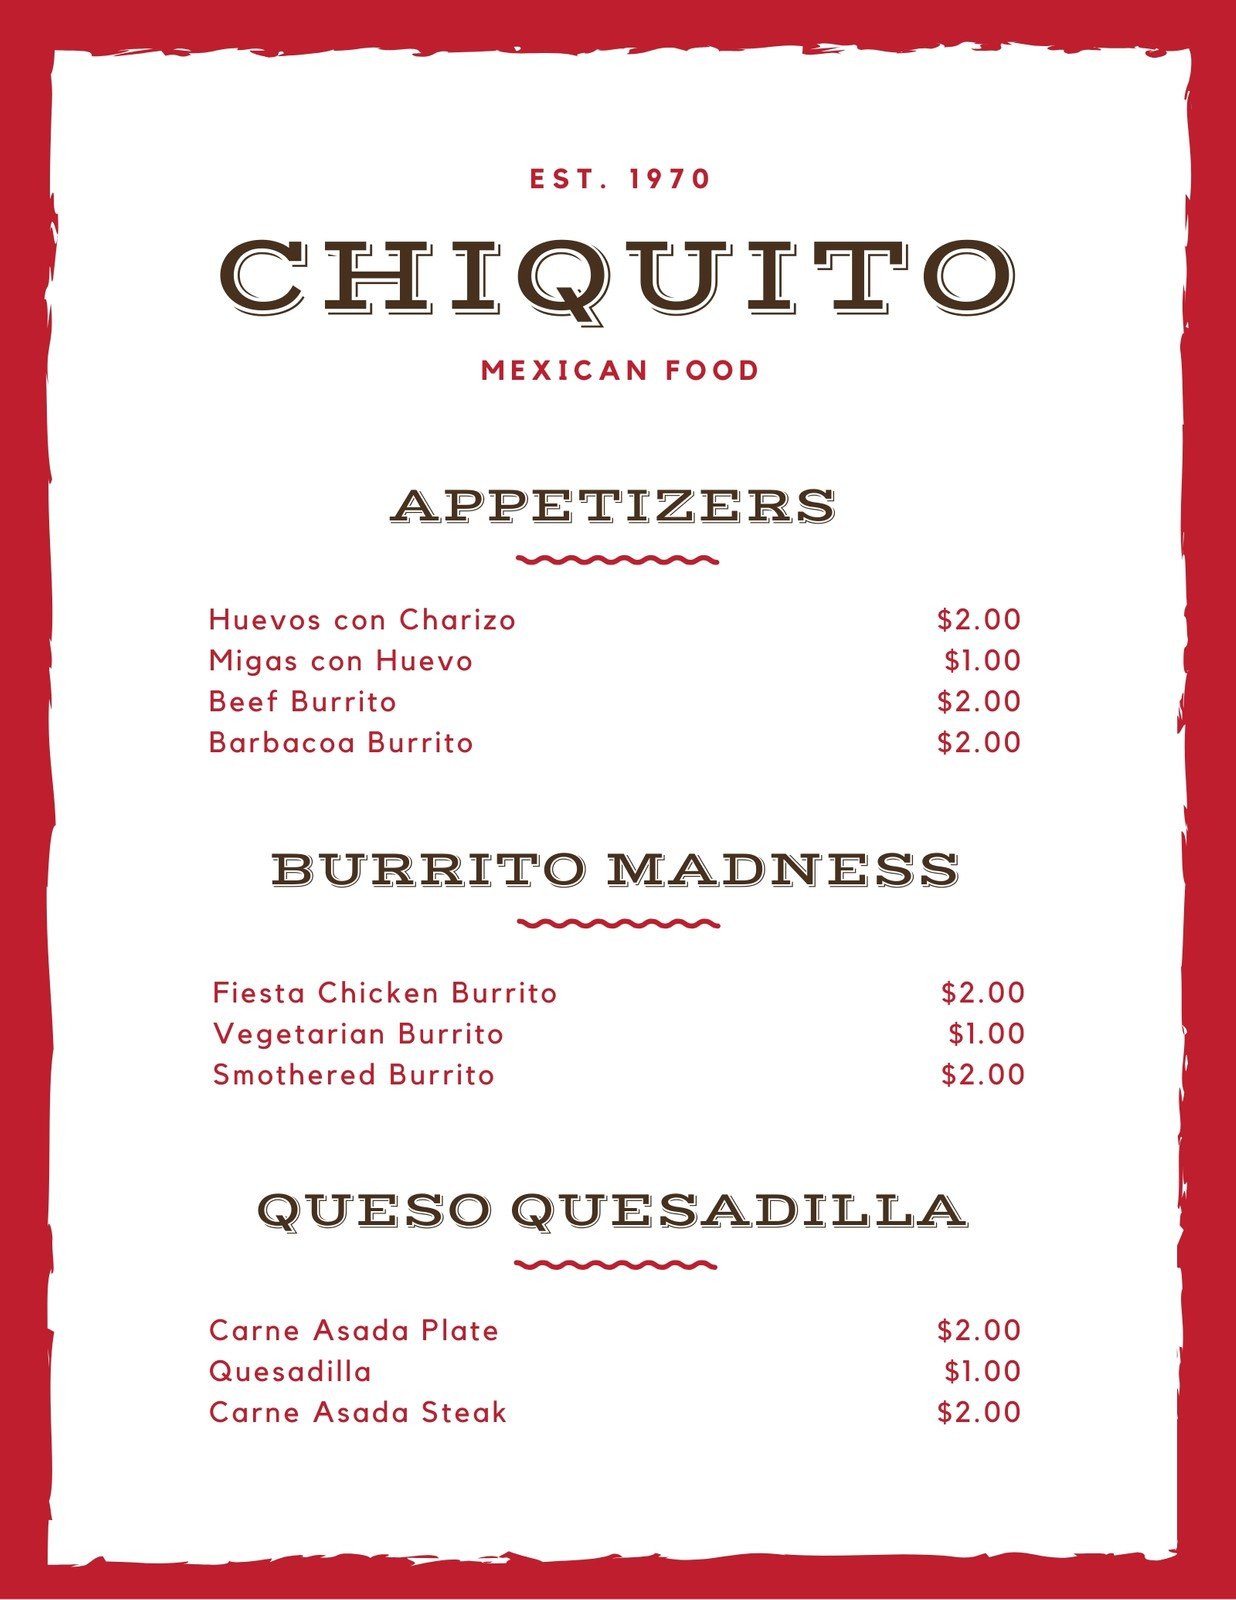 spanish menu